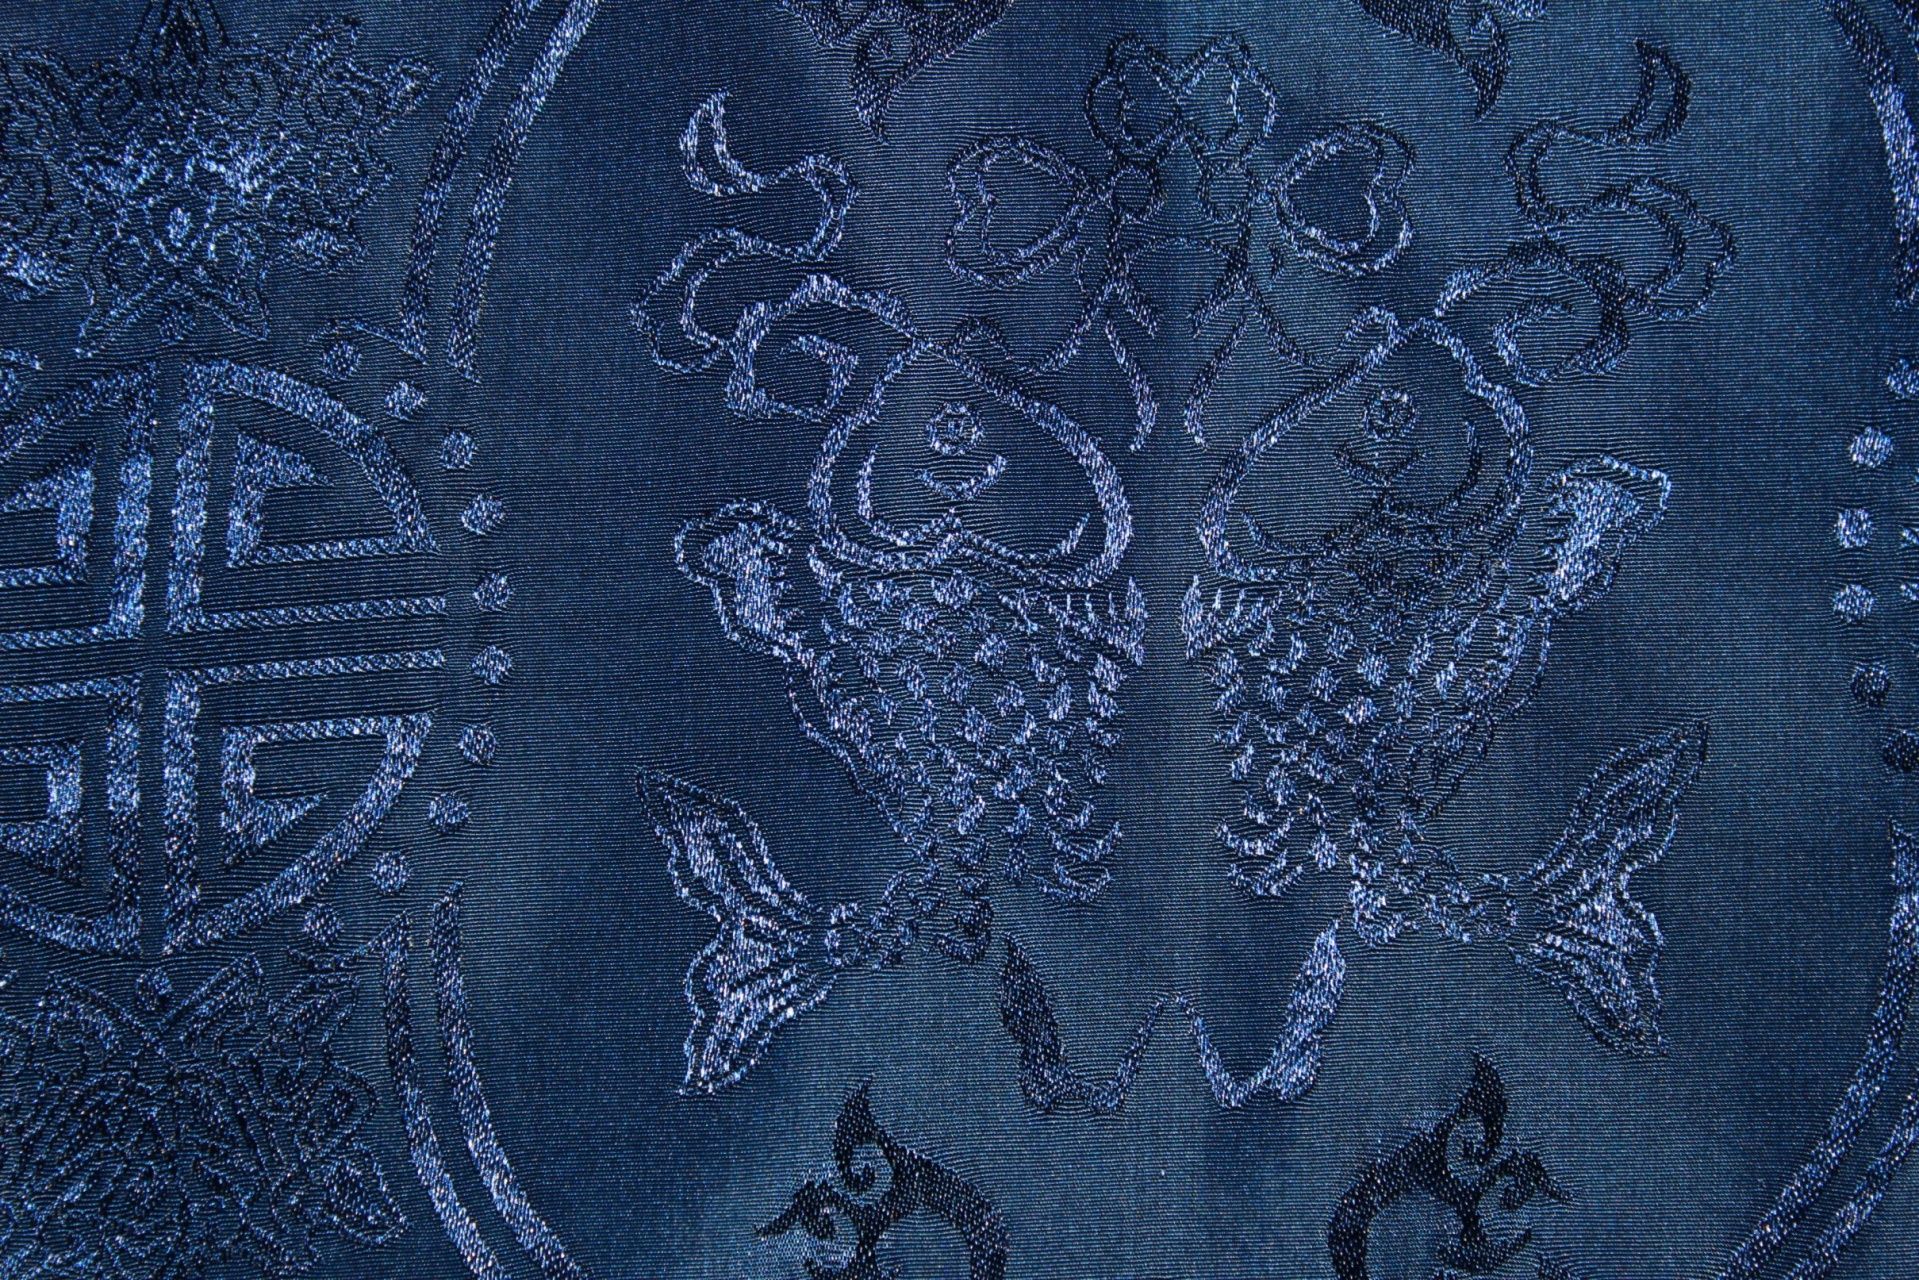 Escuro azul da tela de seda